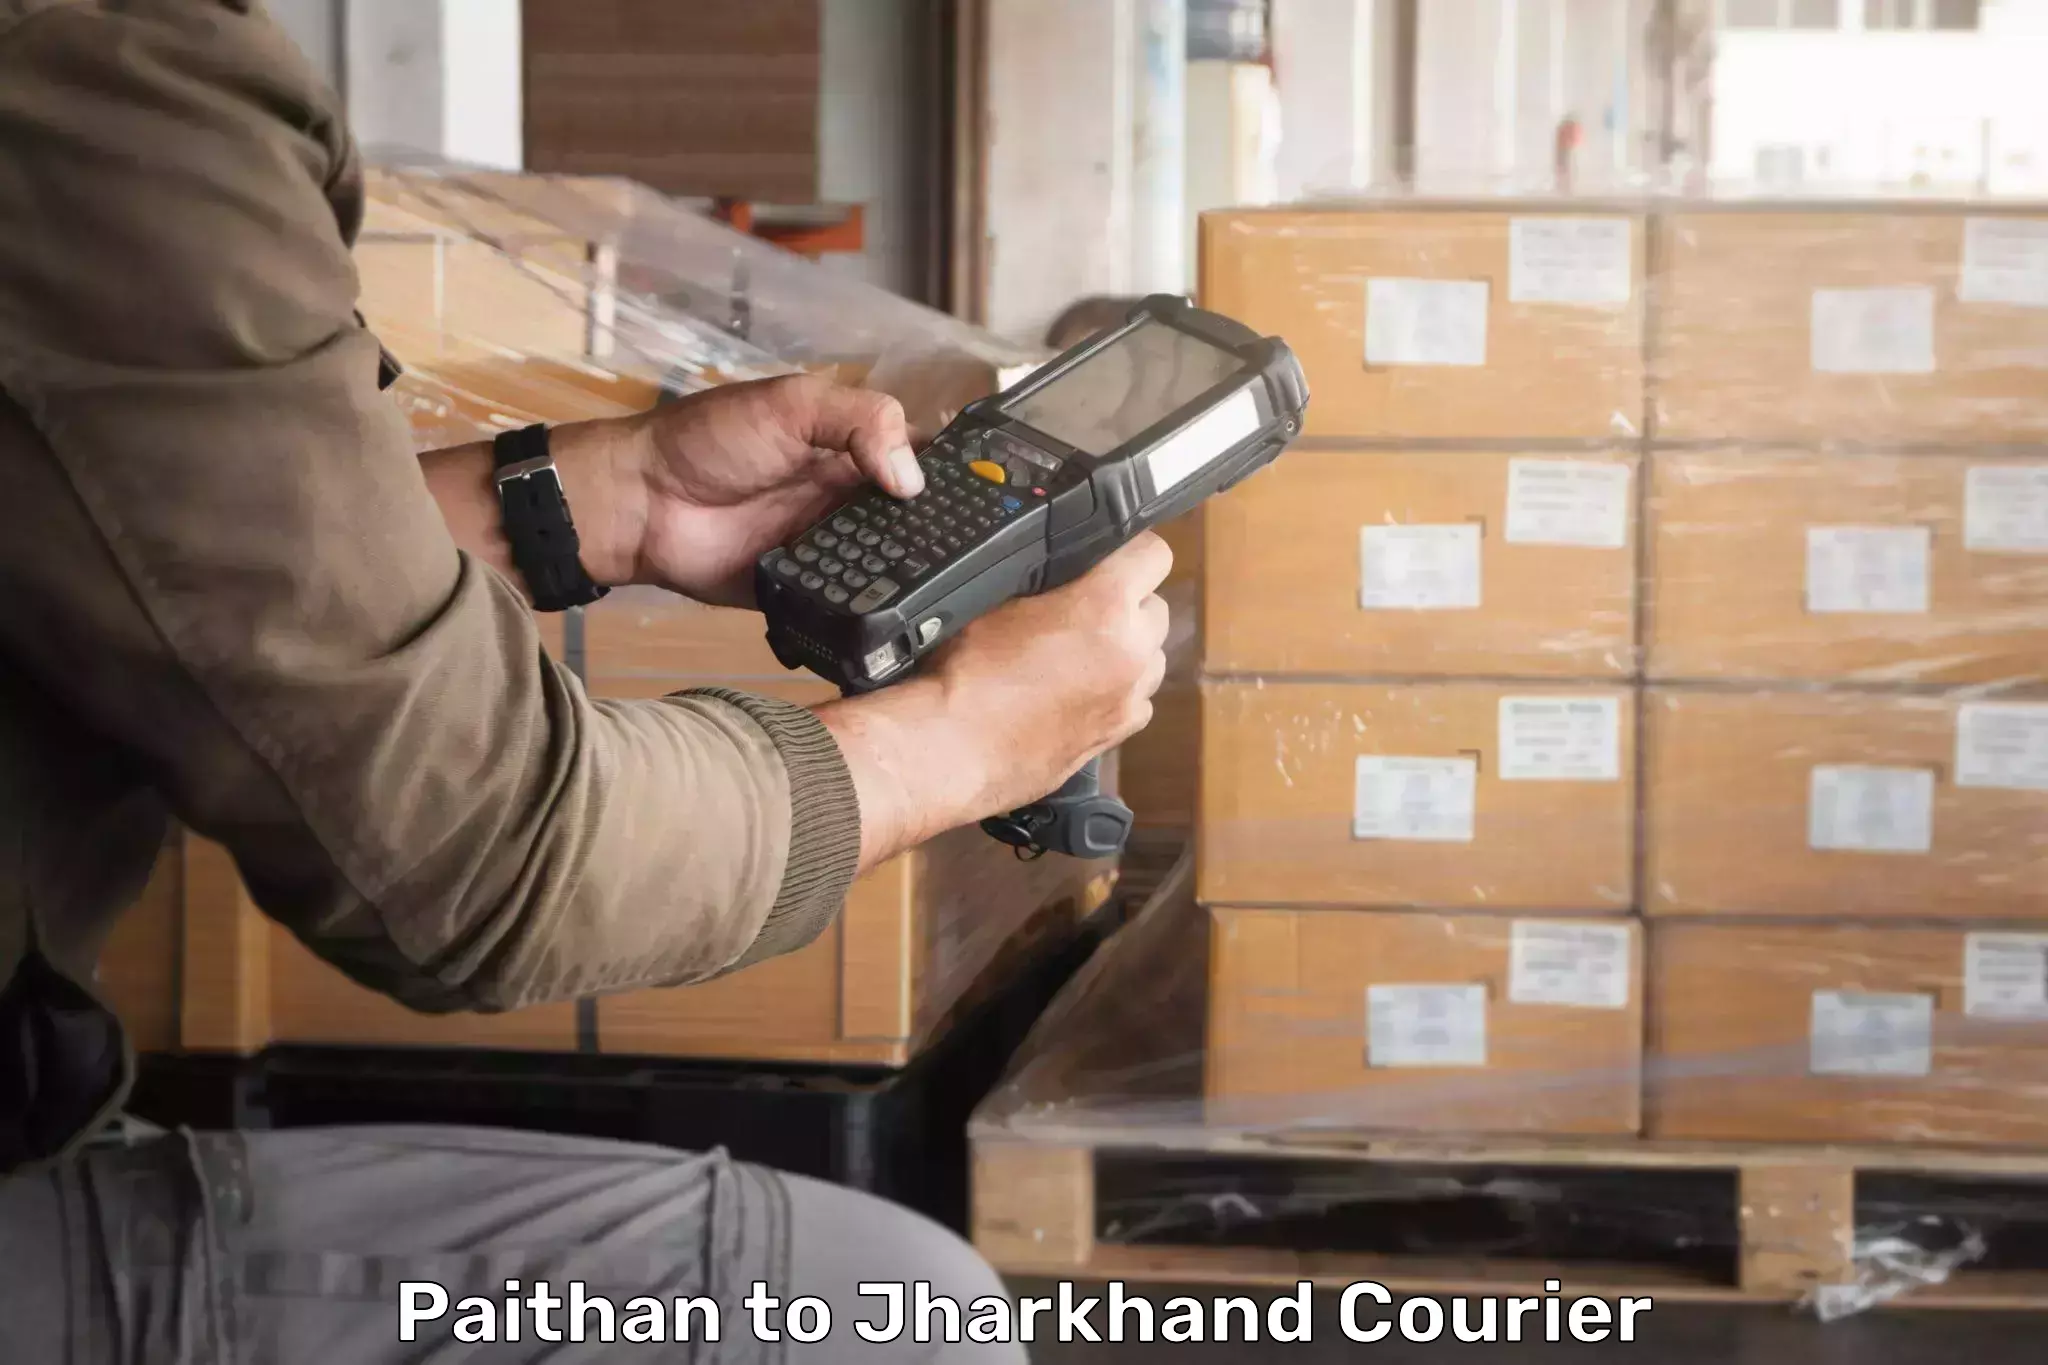 Global logistics network Paithan to Shikaripara